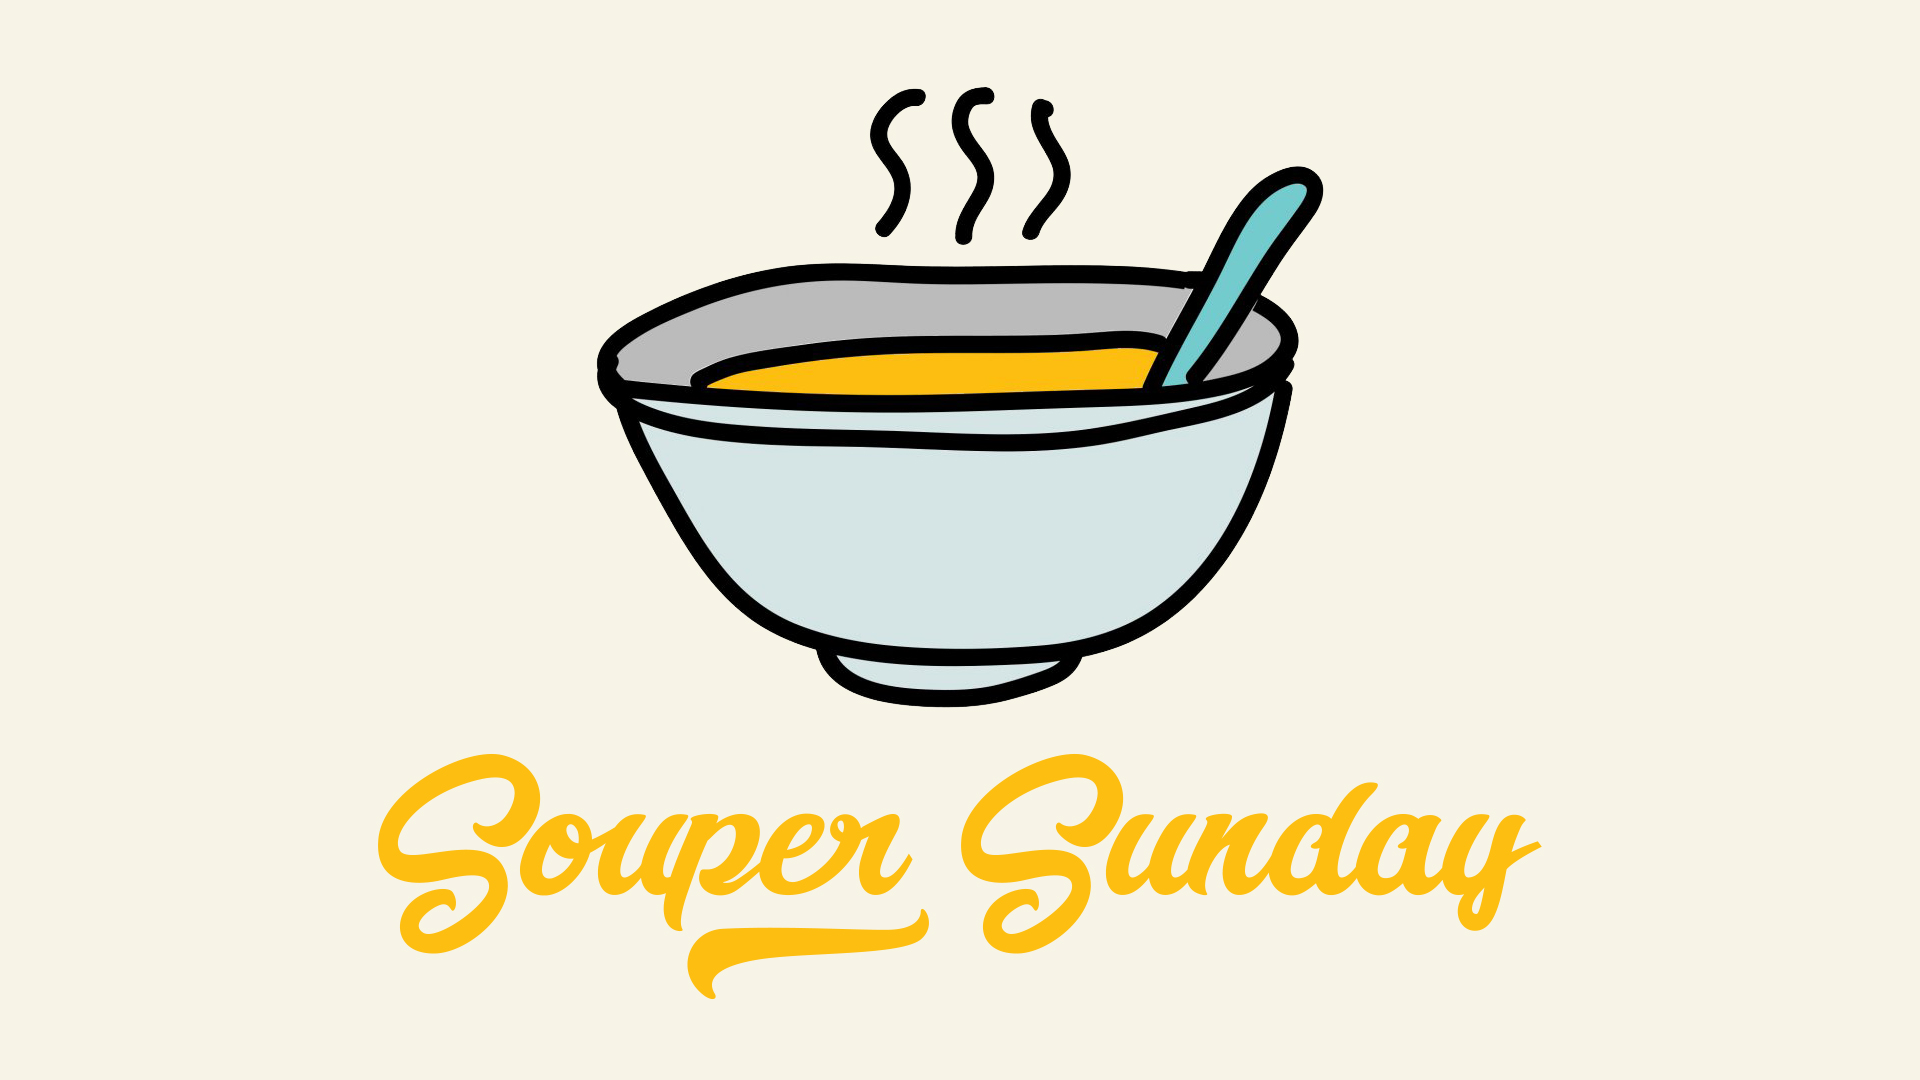 Souper Sunday